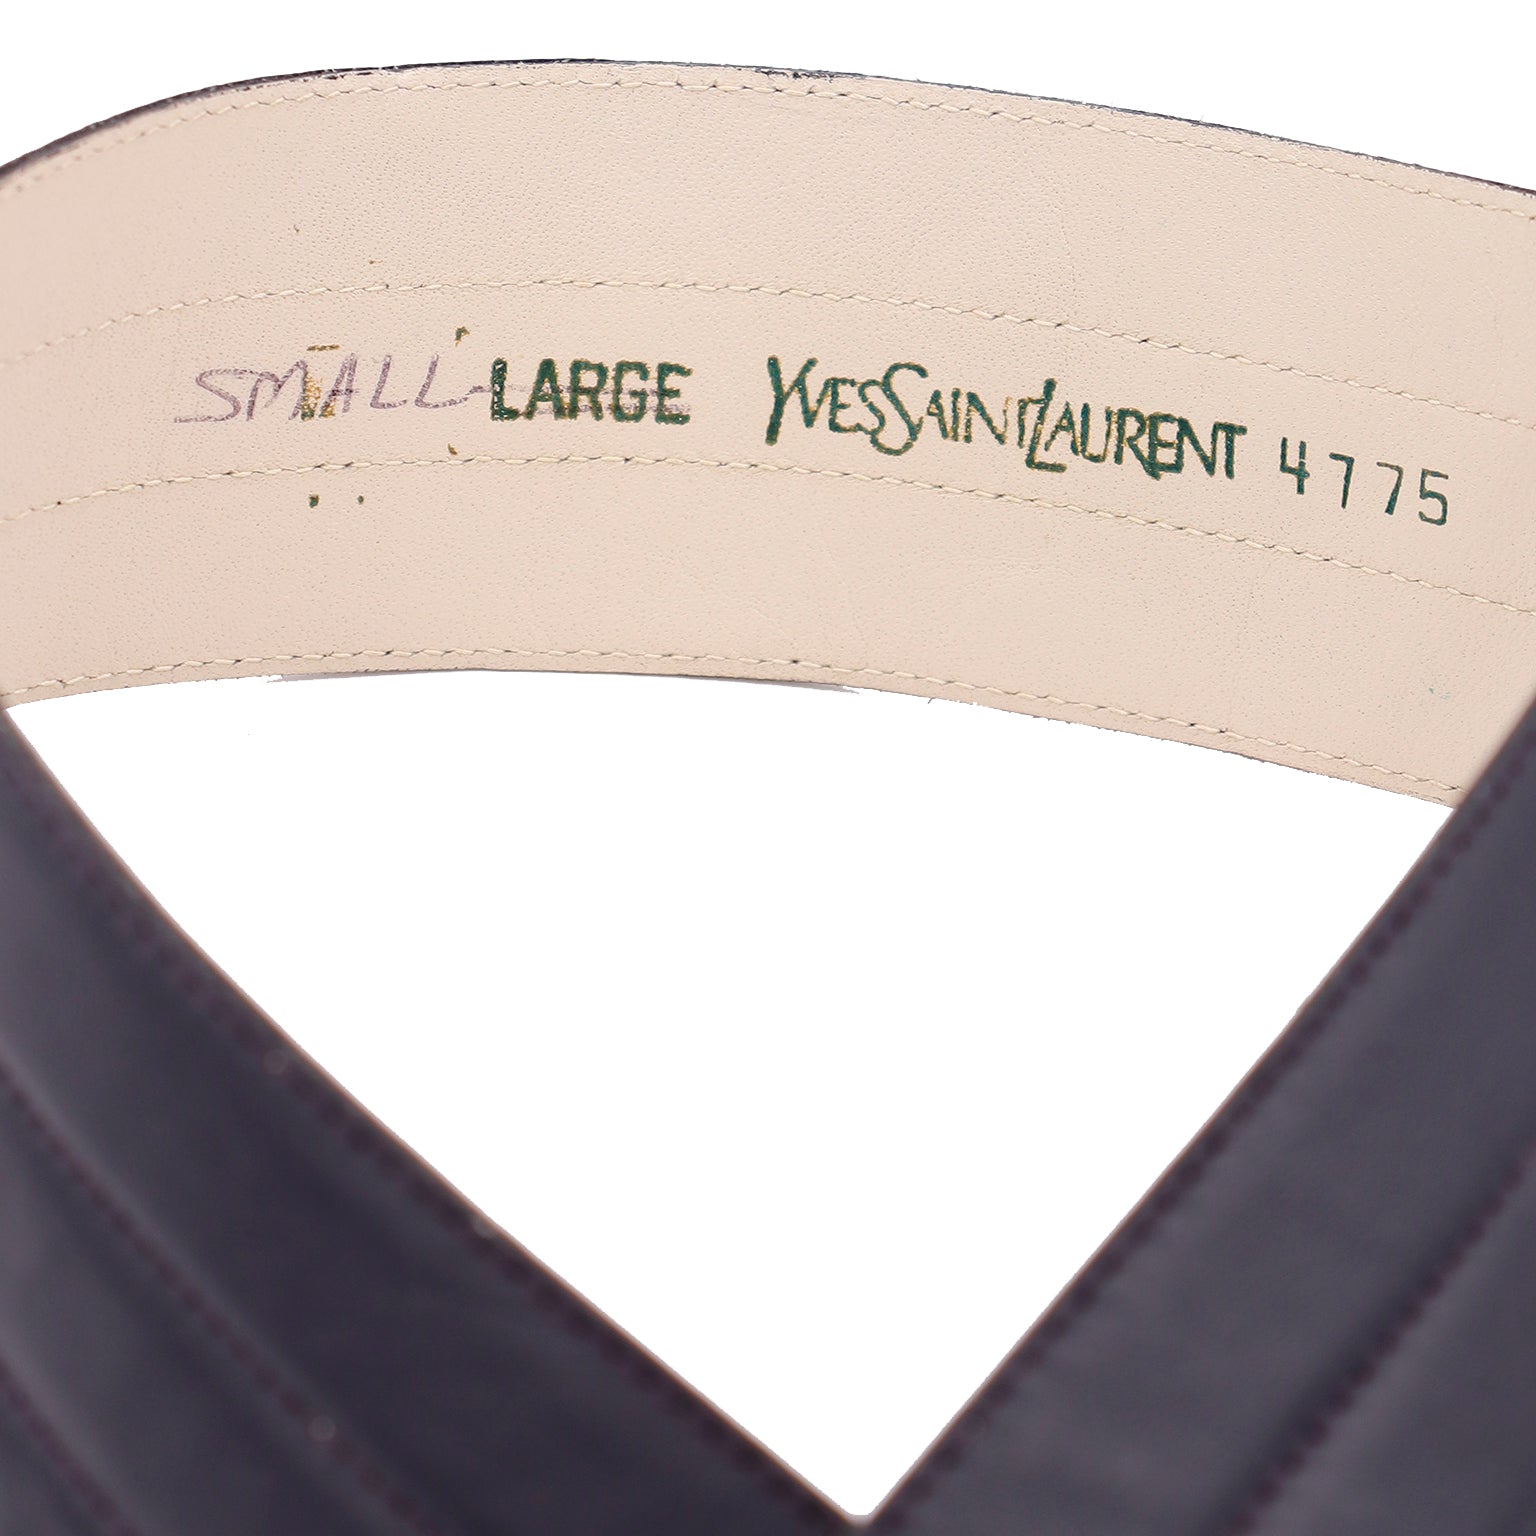 Vintage Black YSL Leather Waist Belt – Large → Hotbox Vintage